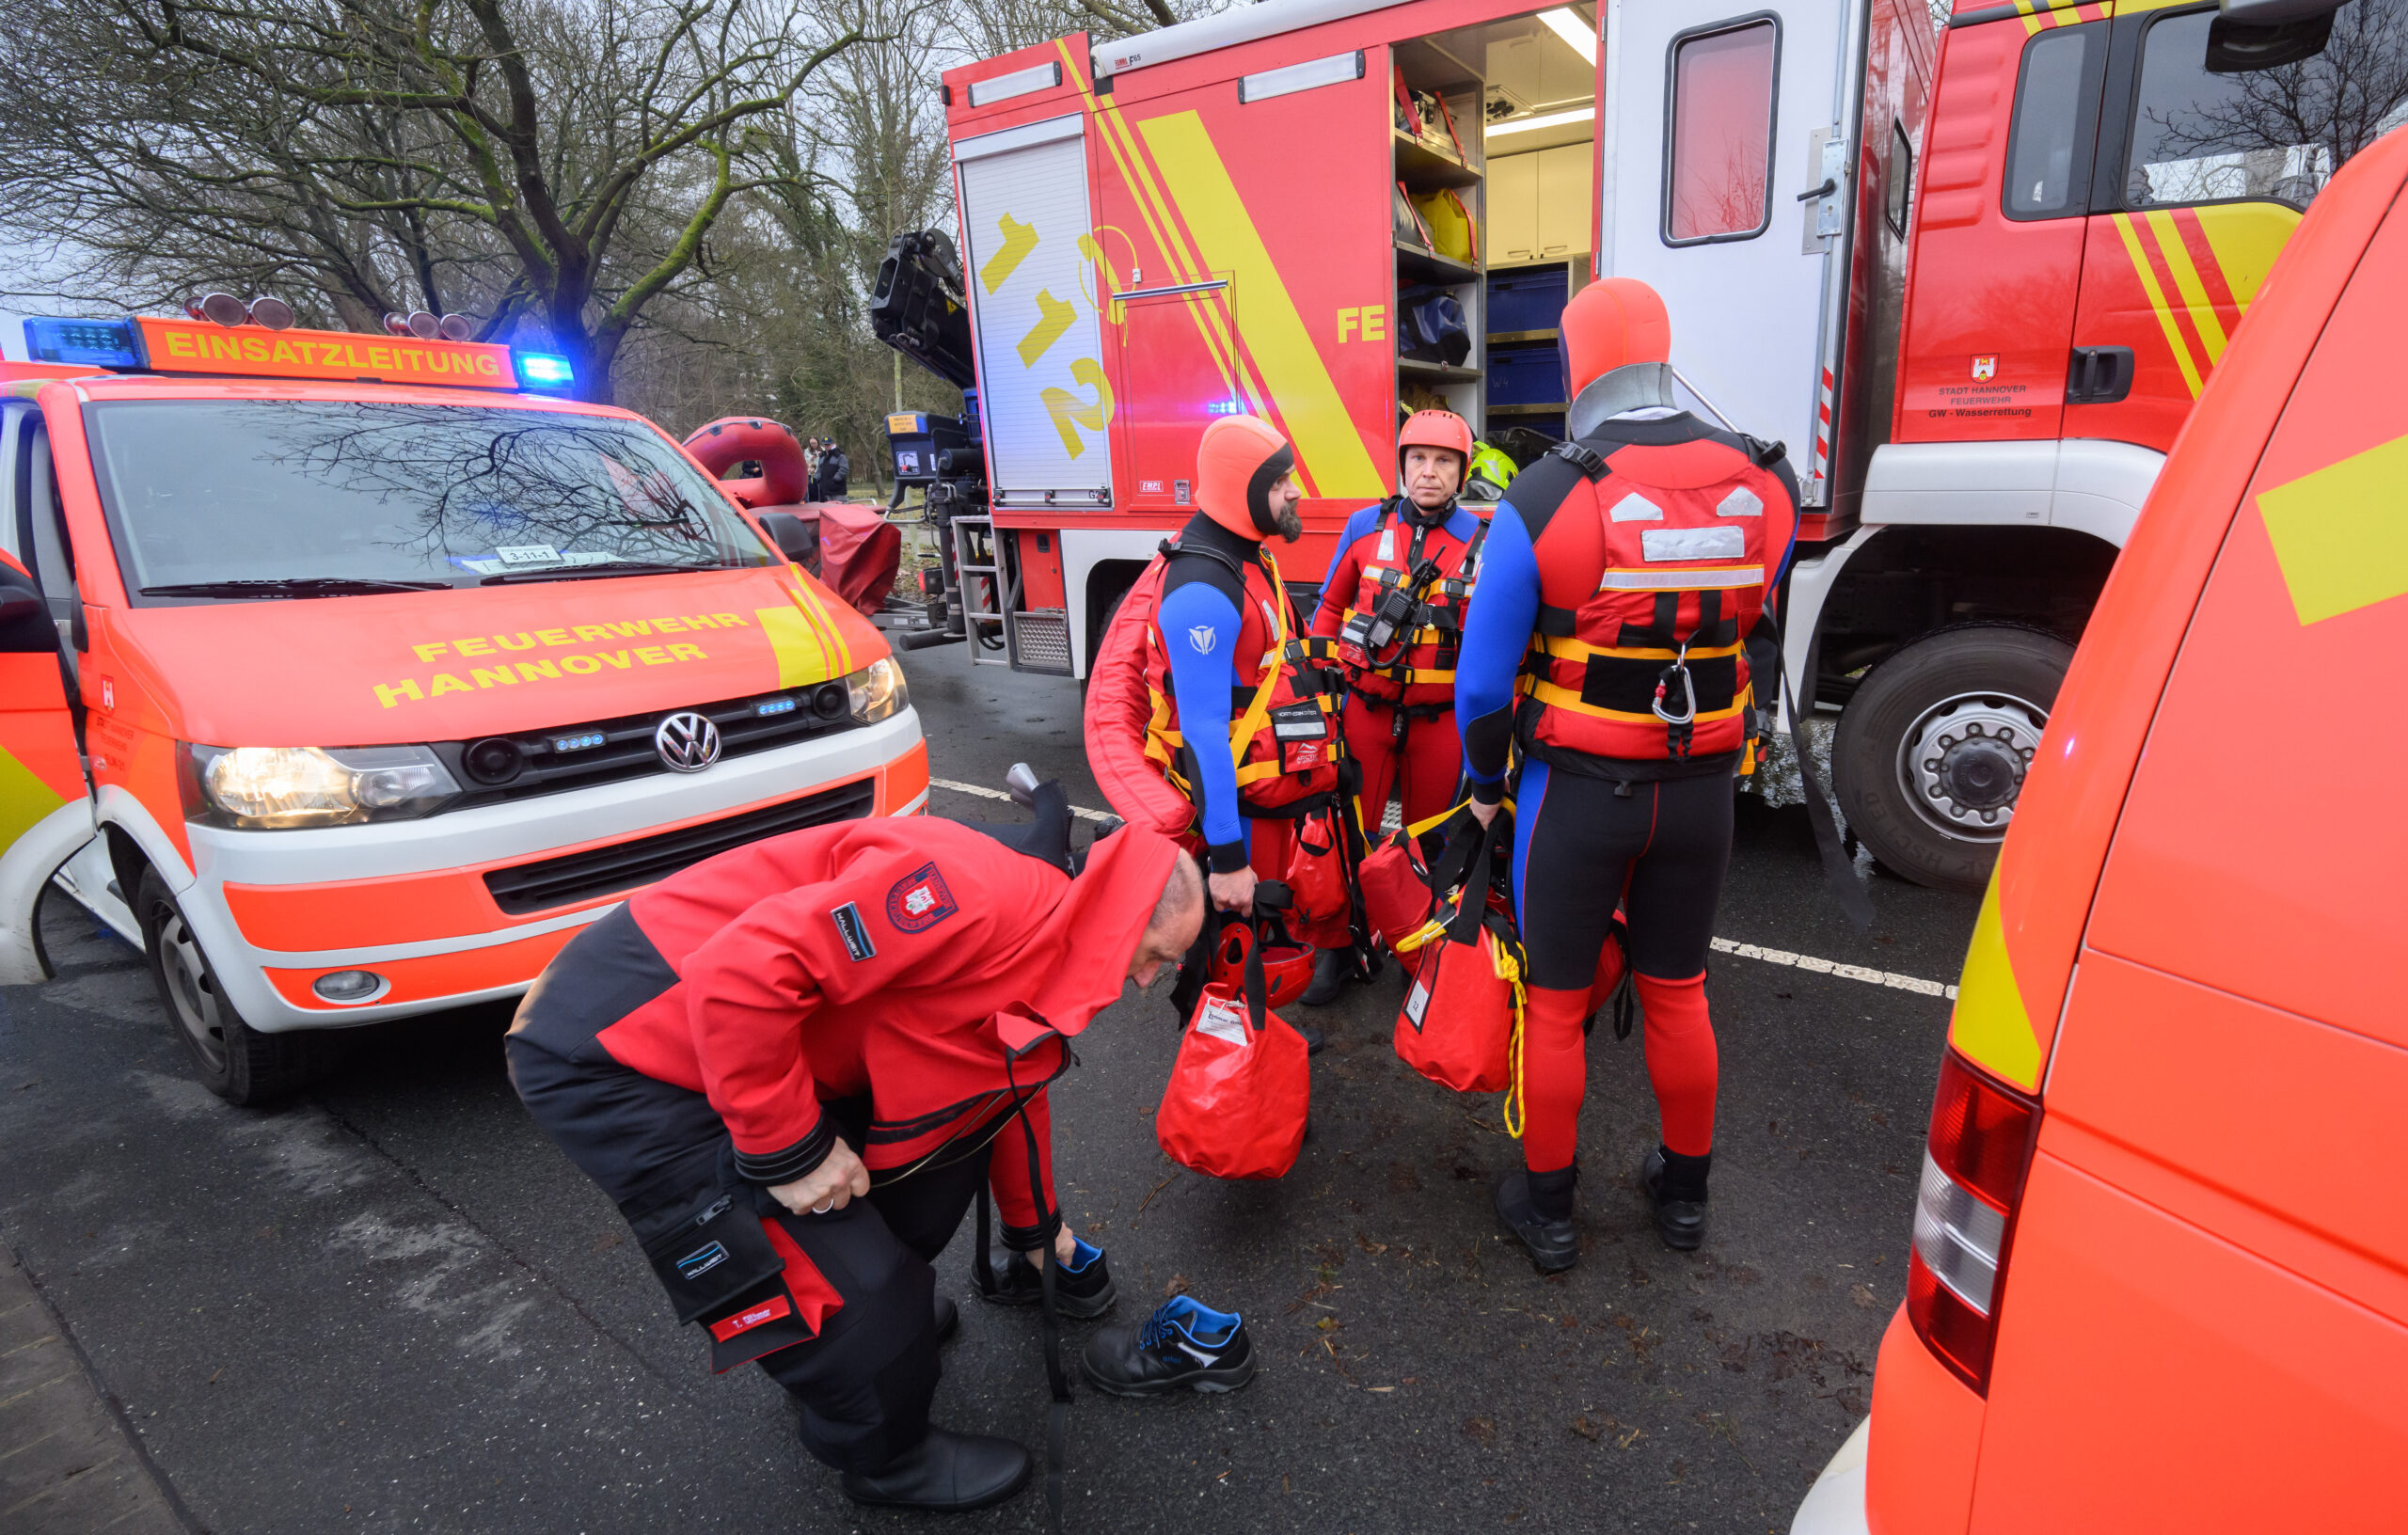 Einsatzkräfte der Wasserrettung der Feuerwehr Hannover stehen bei einem Einsatz auf einer überfluteten Straße zwischen Hannover und Hemmingen.